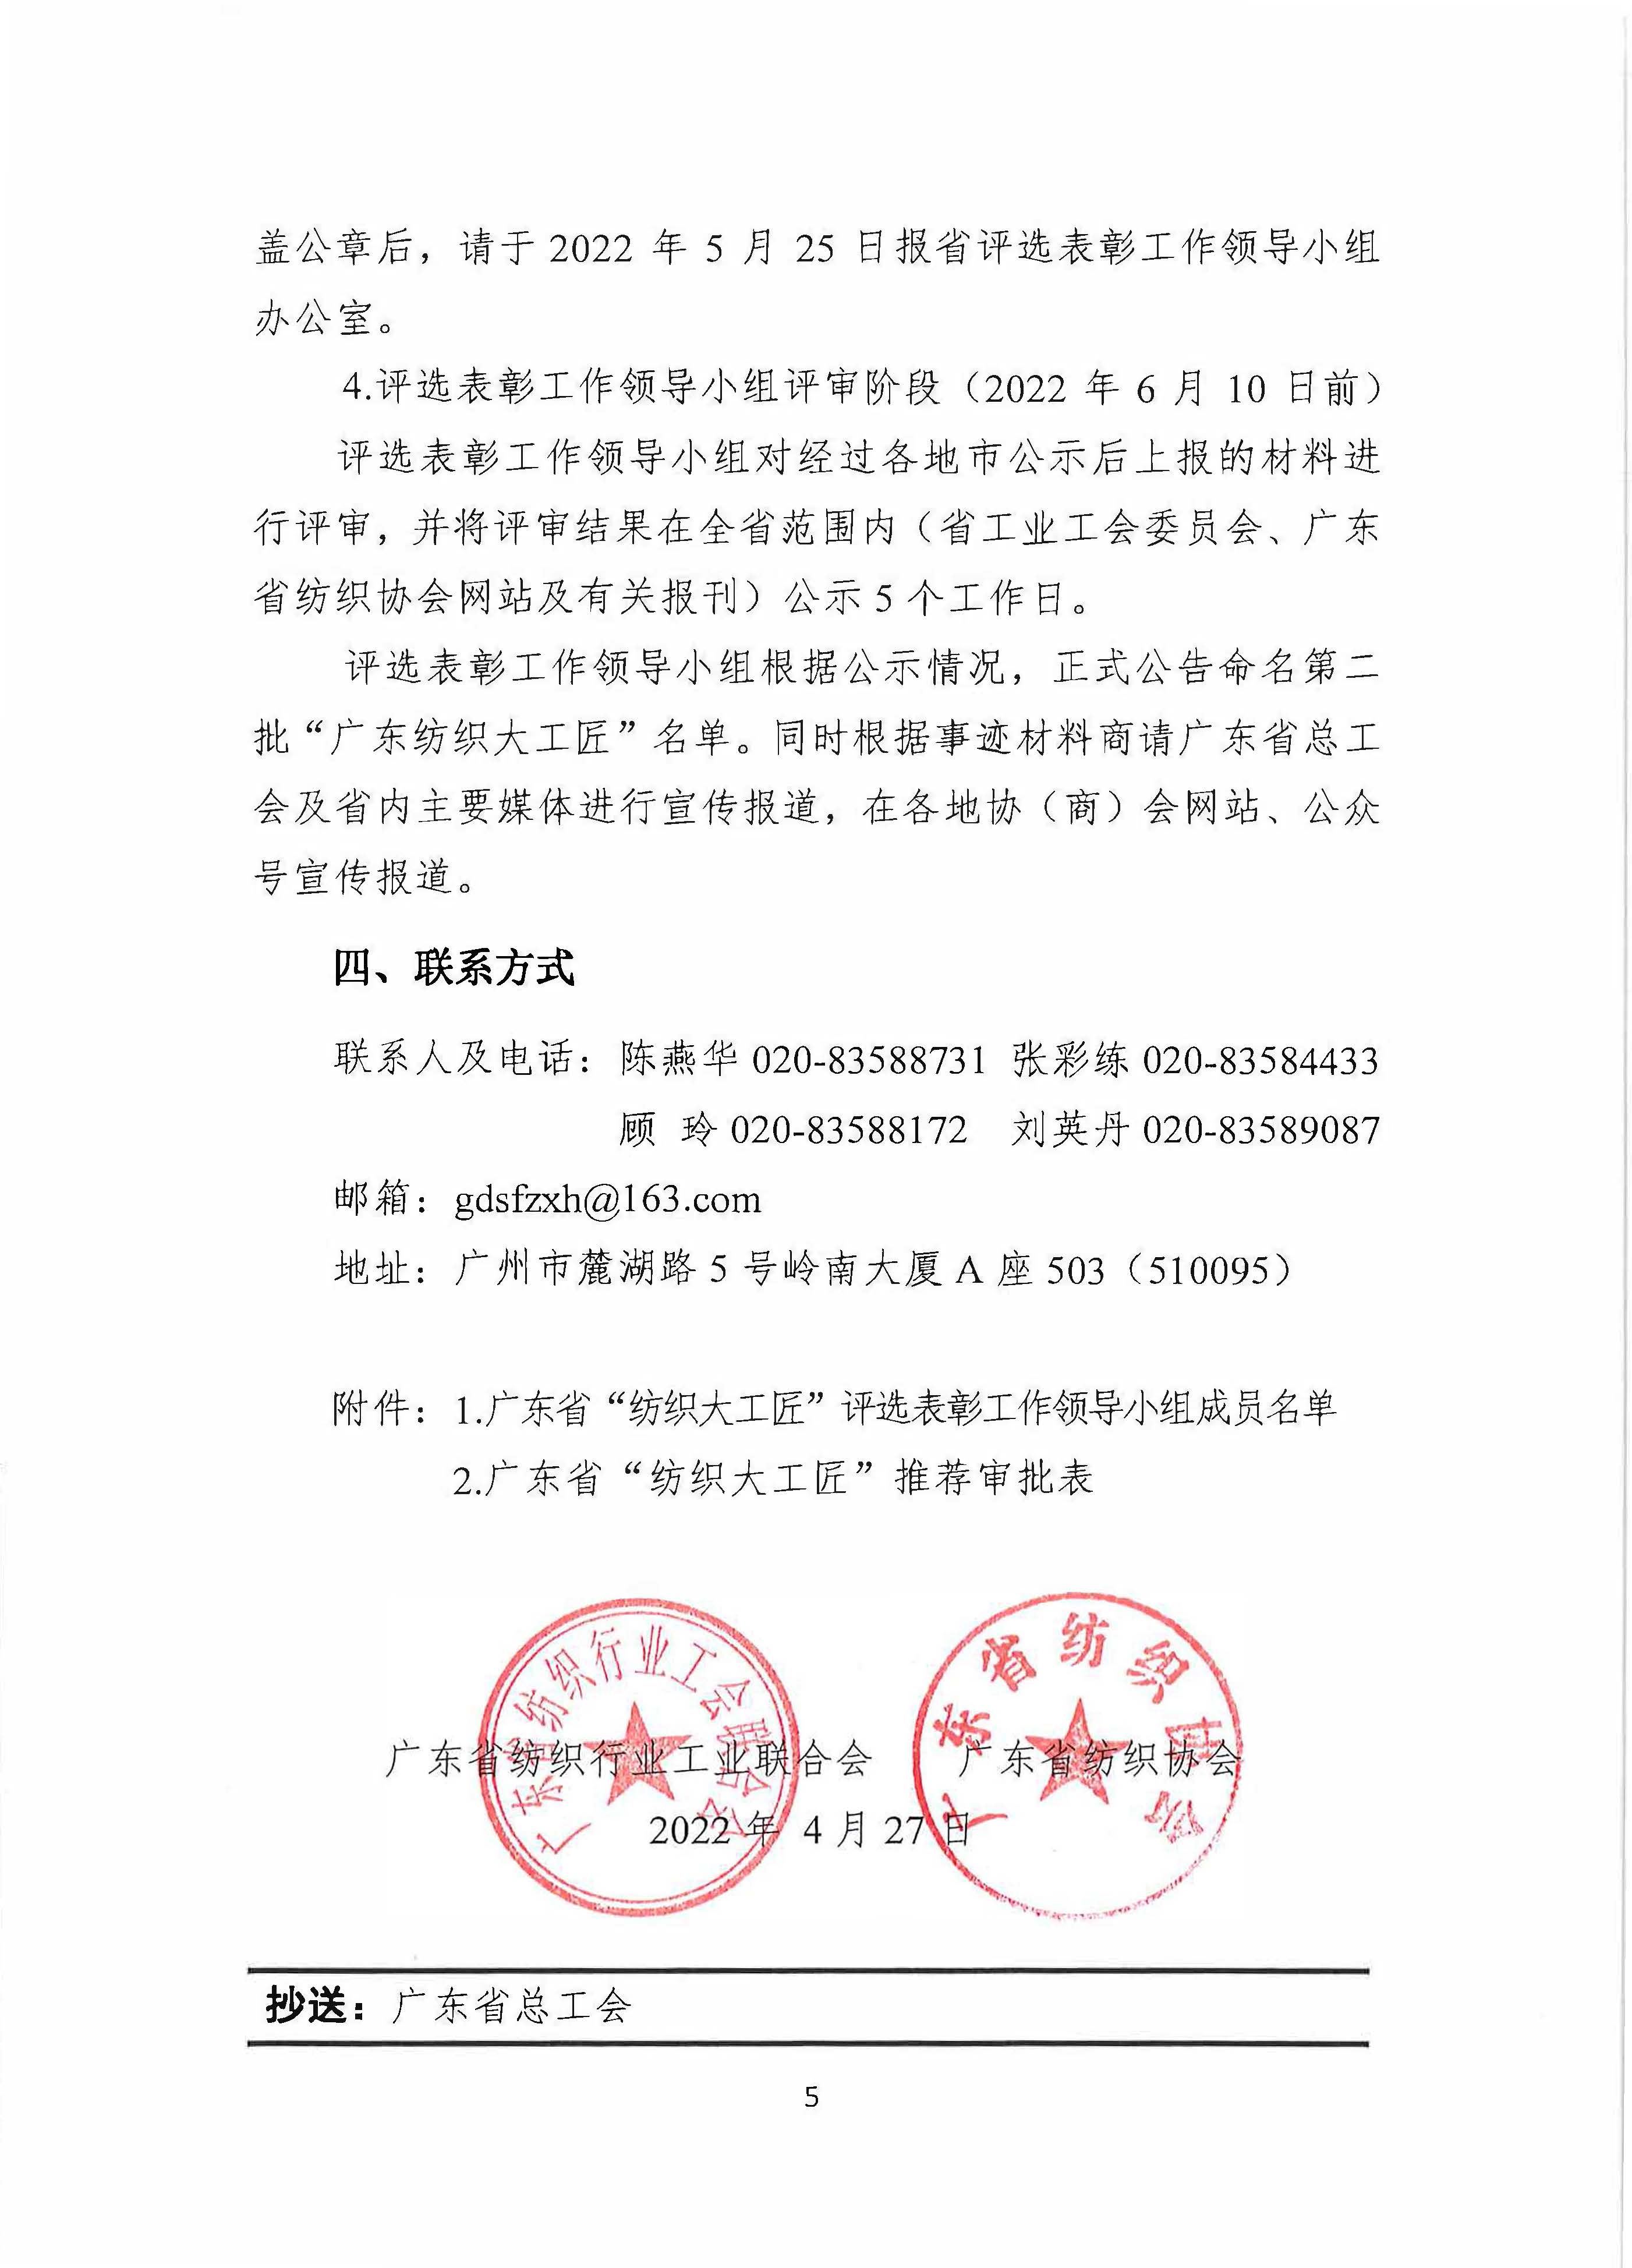 关于开展广东省第二批“纺织大工匠”评选活动的通知_页面_05.jpg